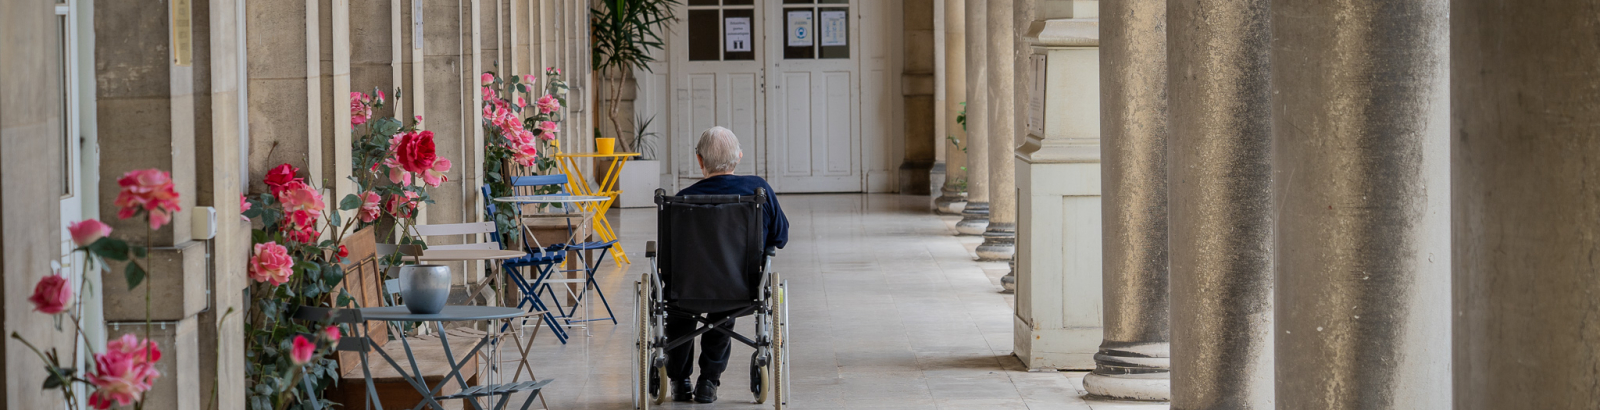 Comment transmettre son assurance-vie à une association? Personne âgée en fauteuil roulant dans une allée.